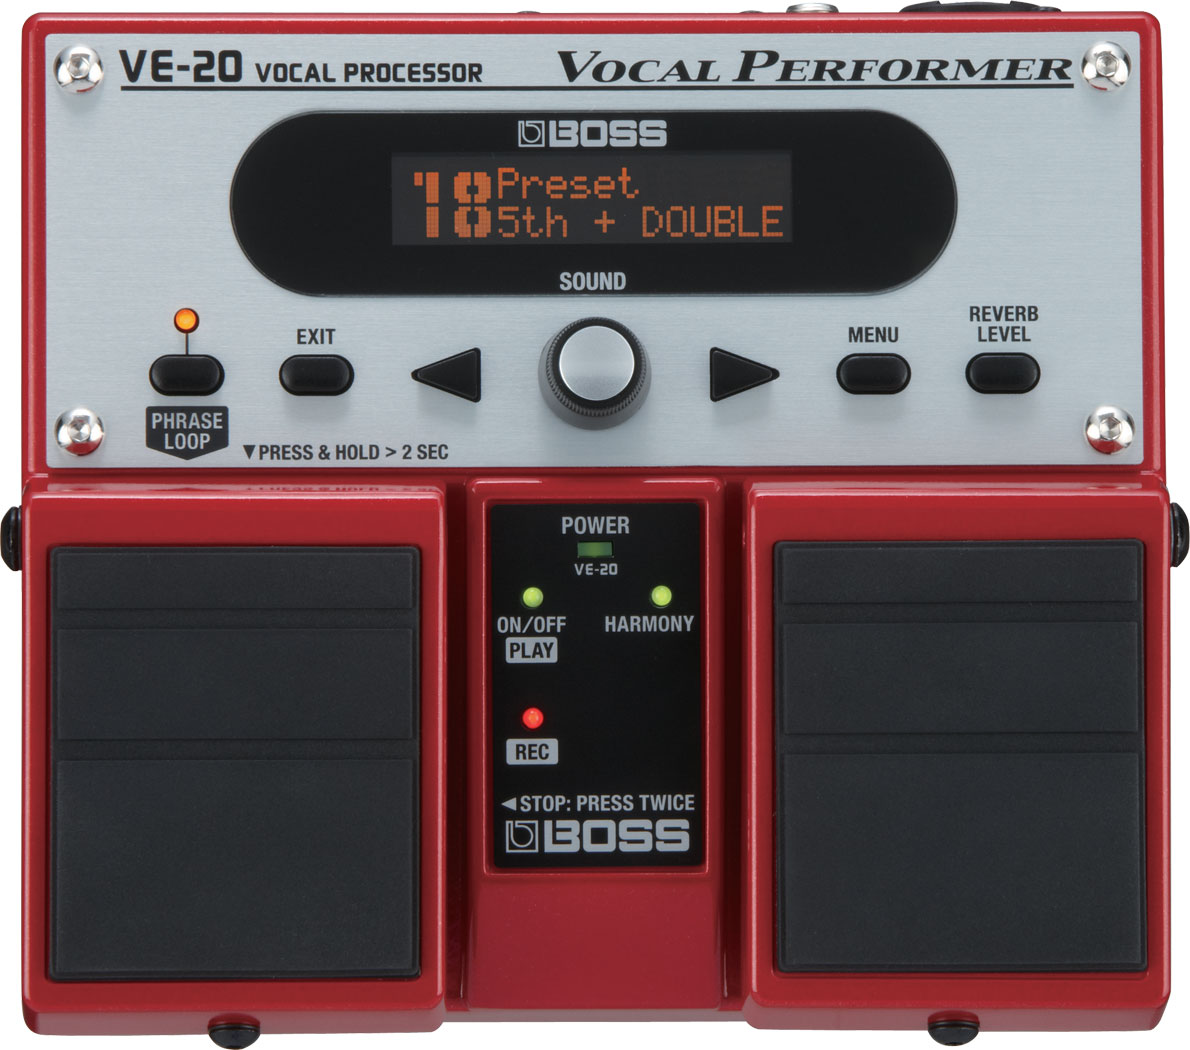 大量購入用 Boss VE-20 ボーカルエフェクター レコーディング/PA機器